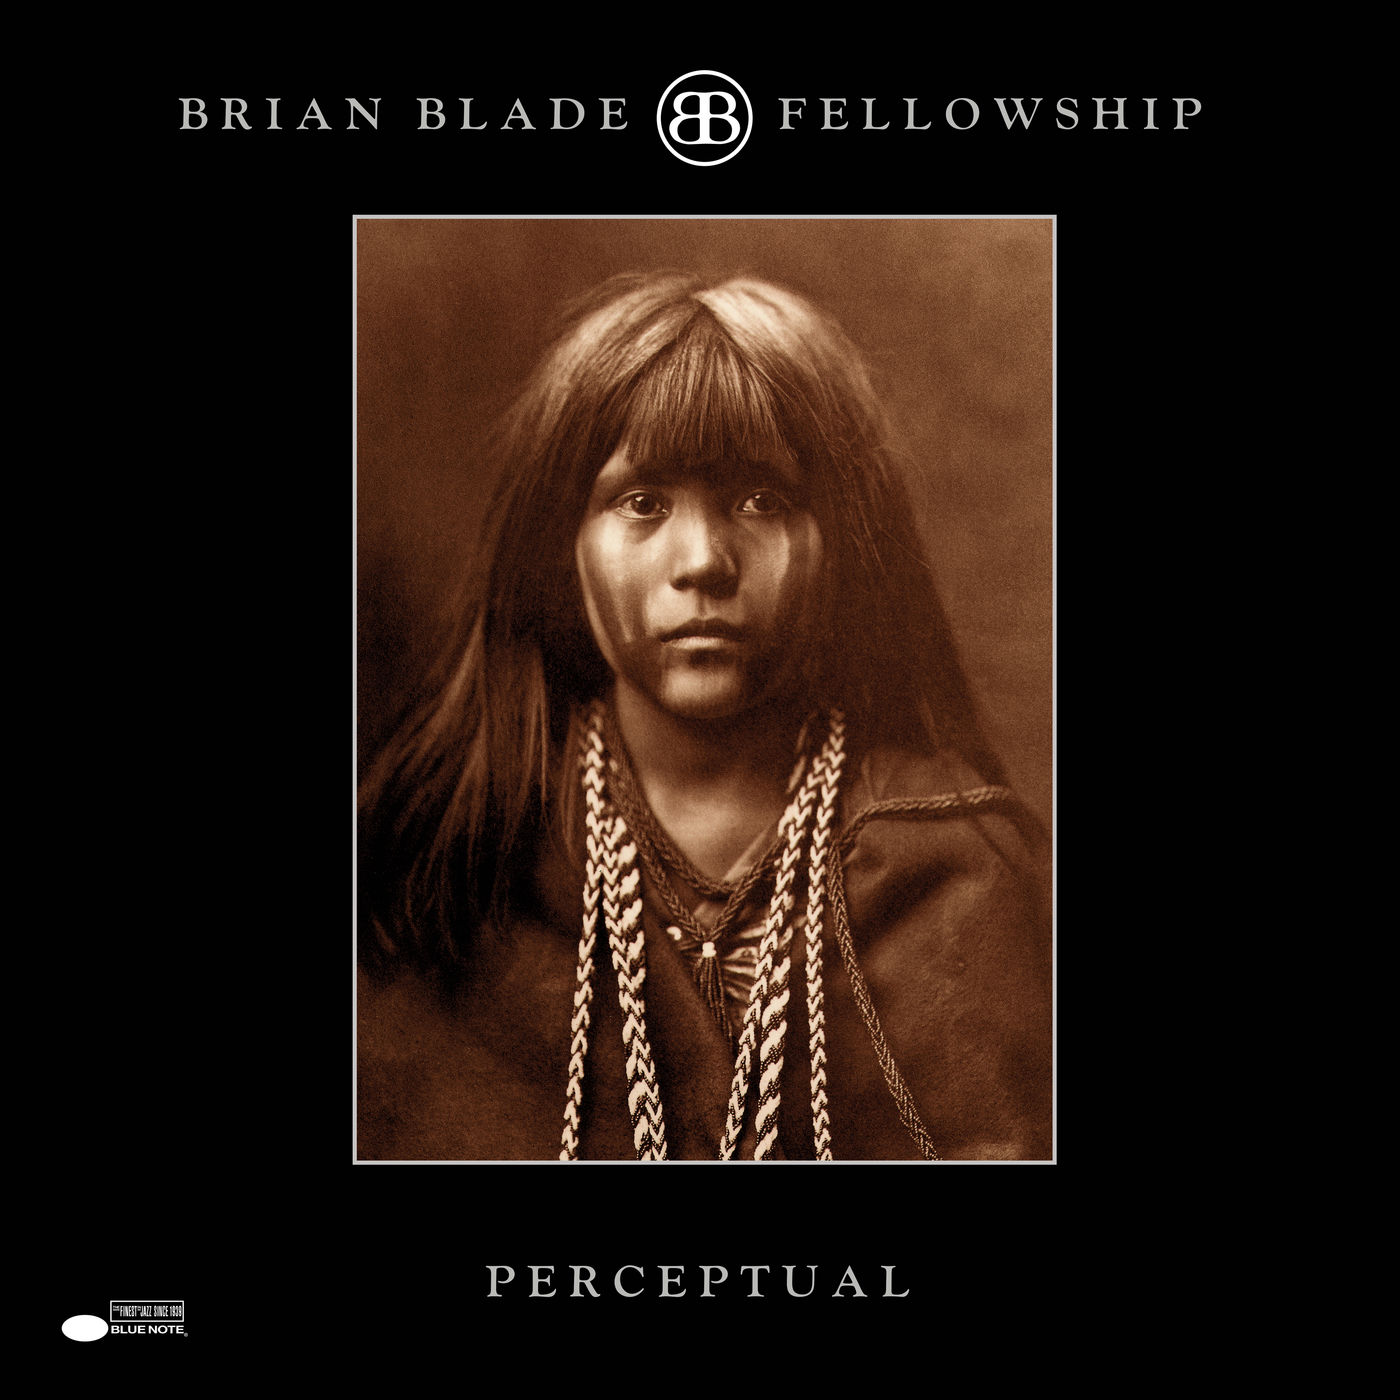 Brian Blade Fellowship - Perceptual (2000/2014) [FLAC 24bit/192kHz]